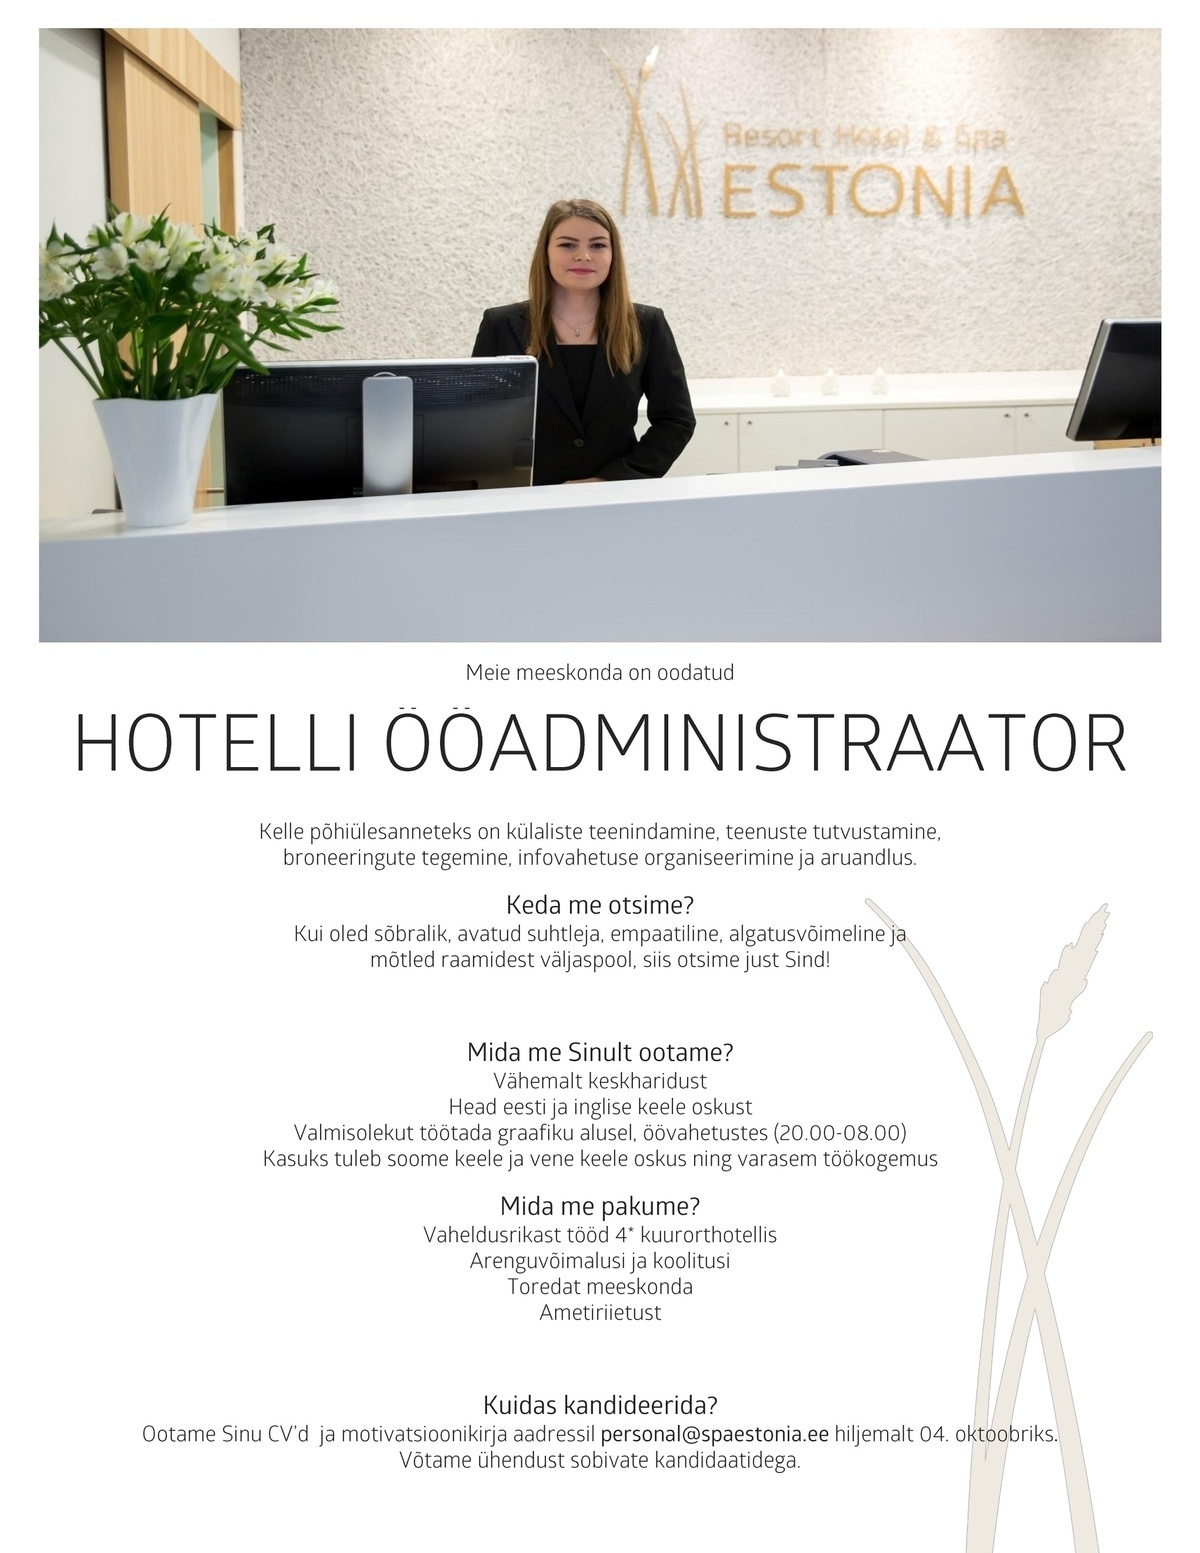 Estonia Spa Hotels AS Ööadministraator